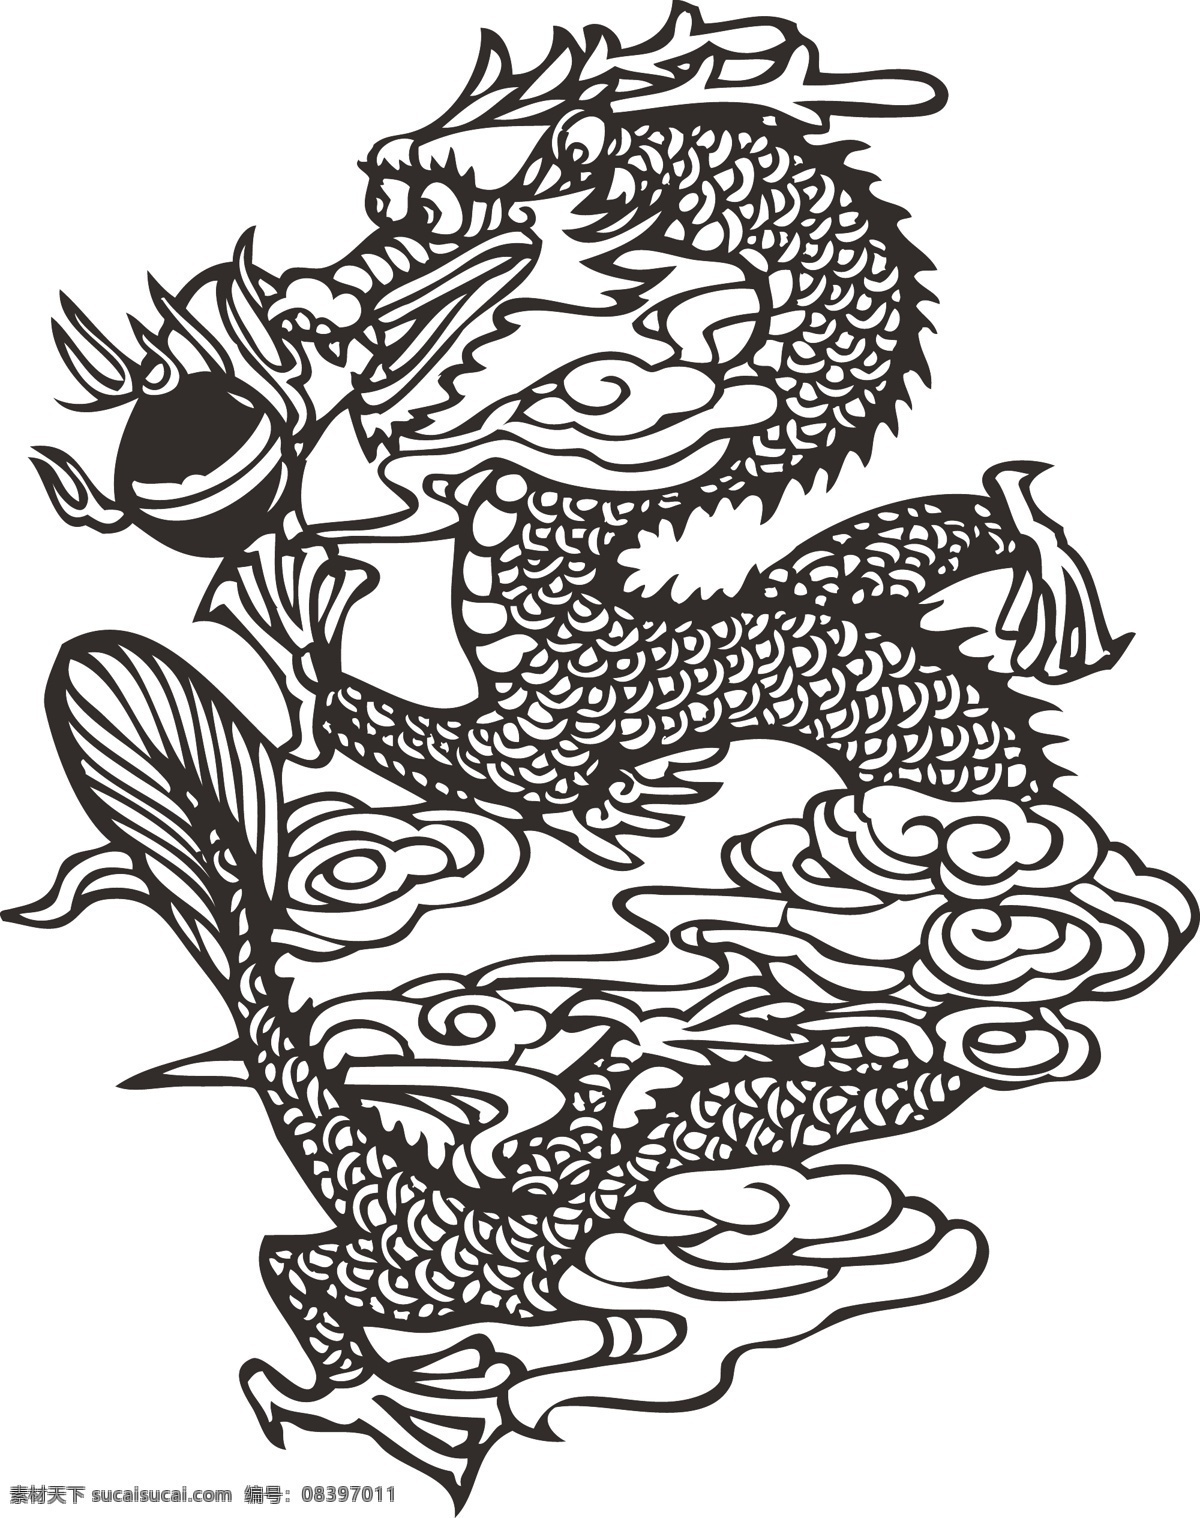 手绘 端午节 中国 龙 戏 球 中国龙 手绘中国龙 龙戏球 中国风格 可爱的中国龙 俏皮的中国龙